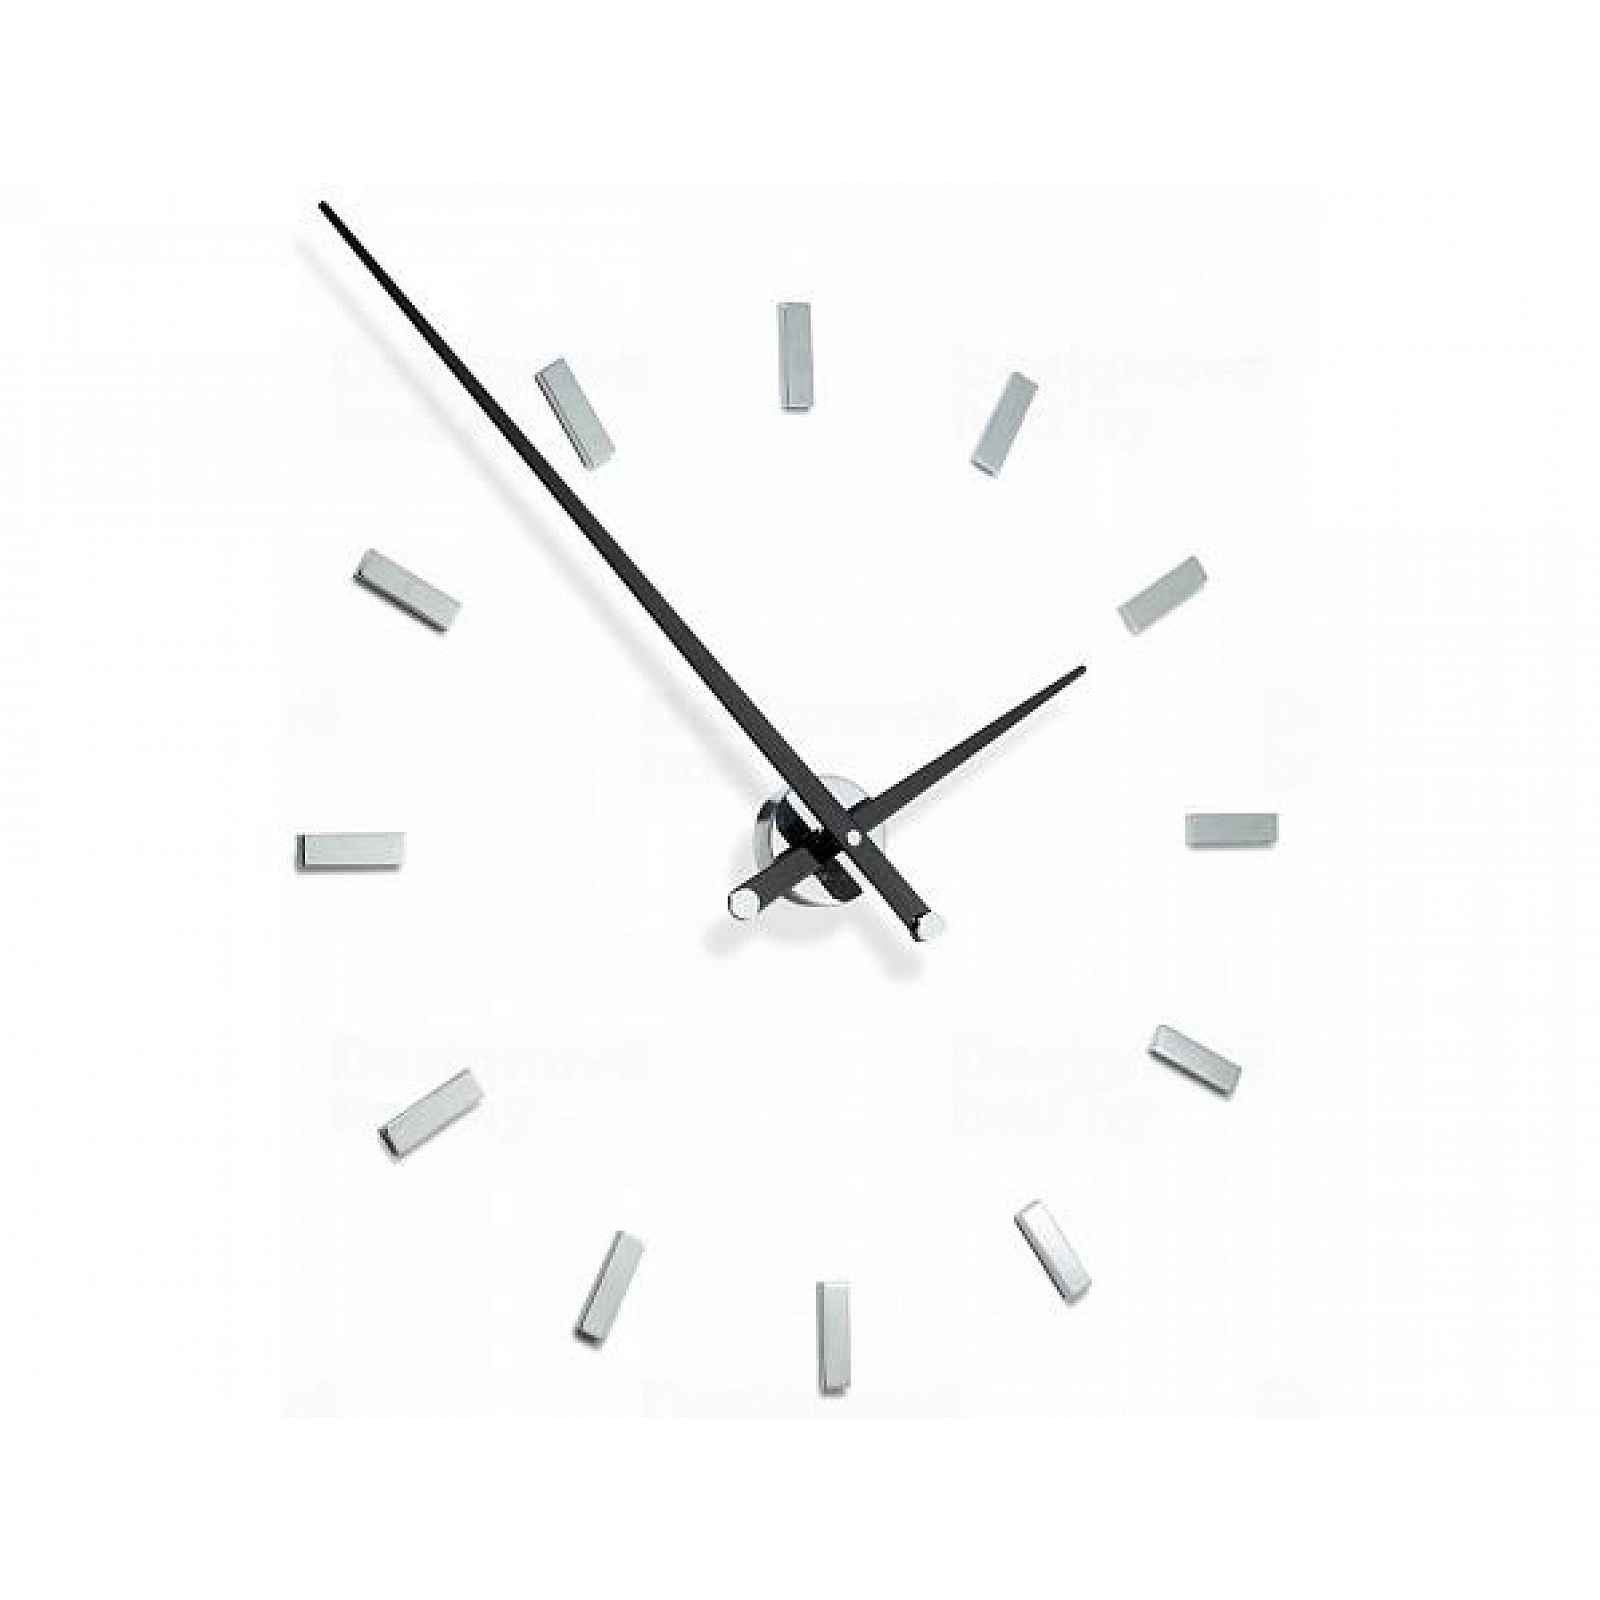 Designové nástěnné hodiny Nomon TACON 12L black 100cm